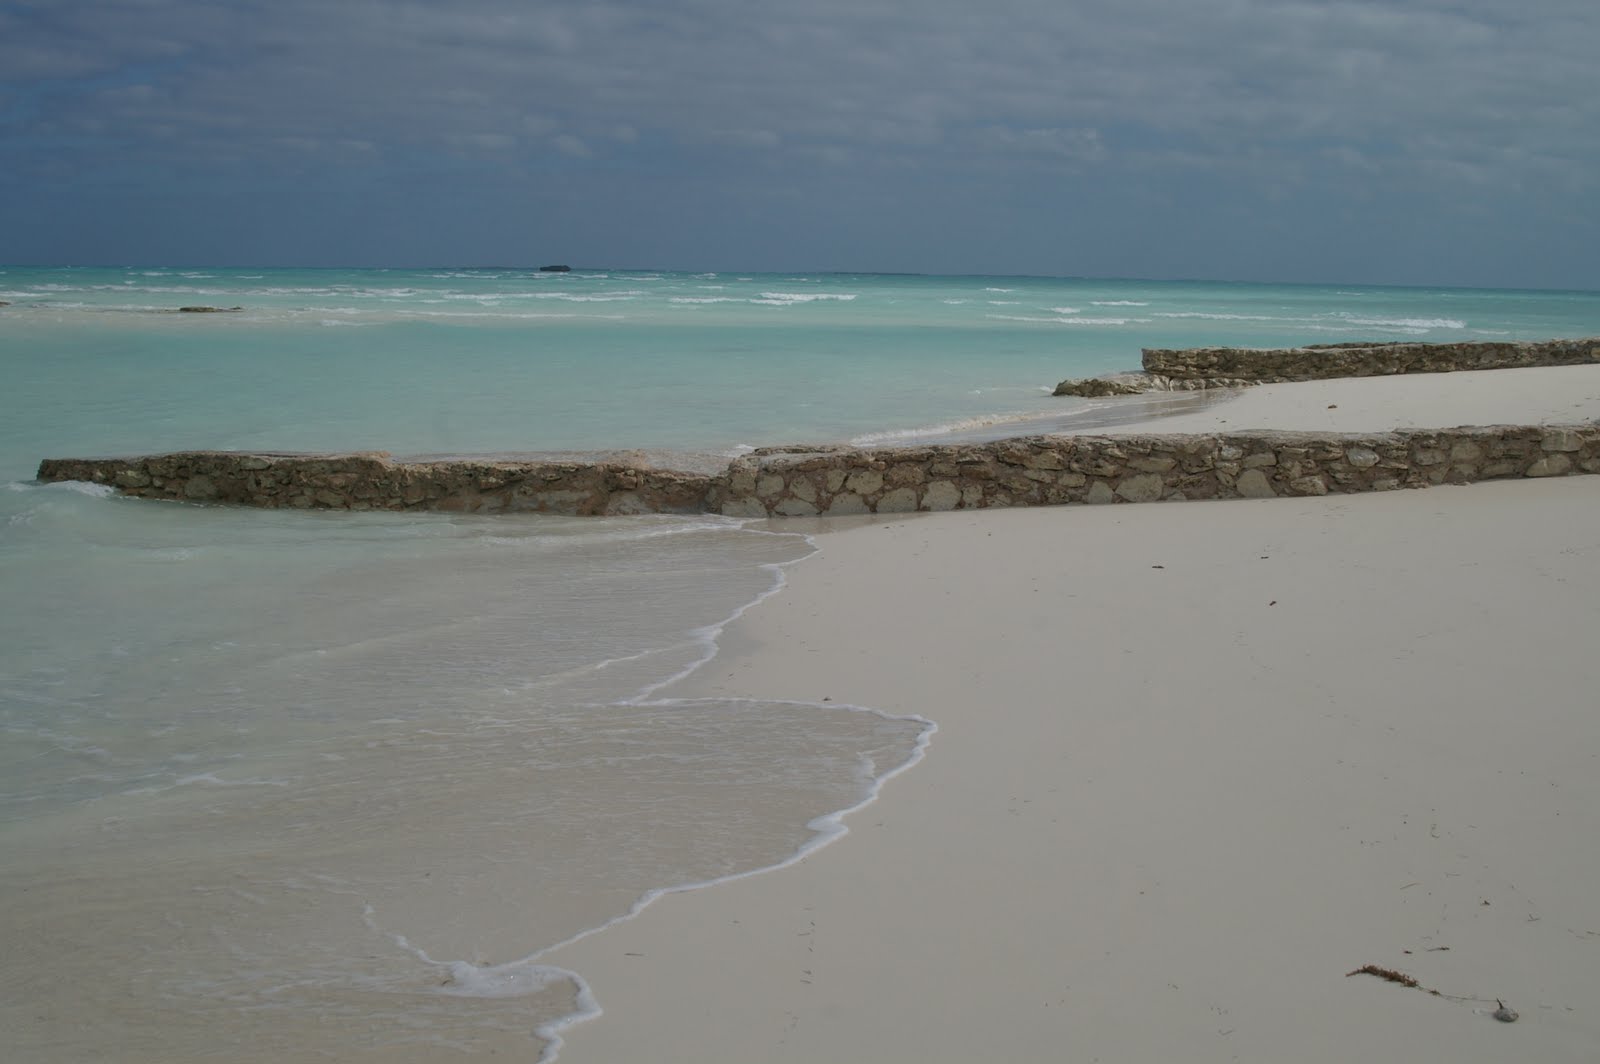 Zdjęcie Leeward beach z poziomem czystości głoska bezdźwięczna